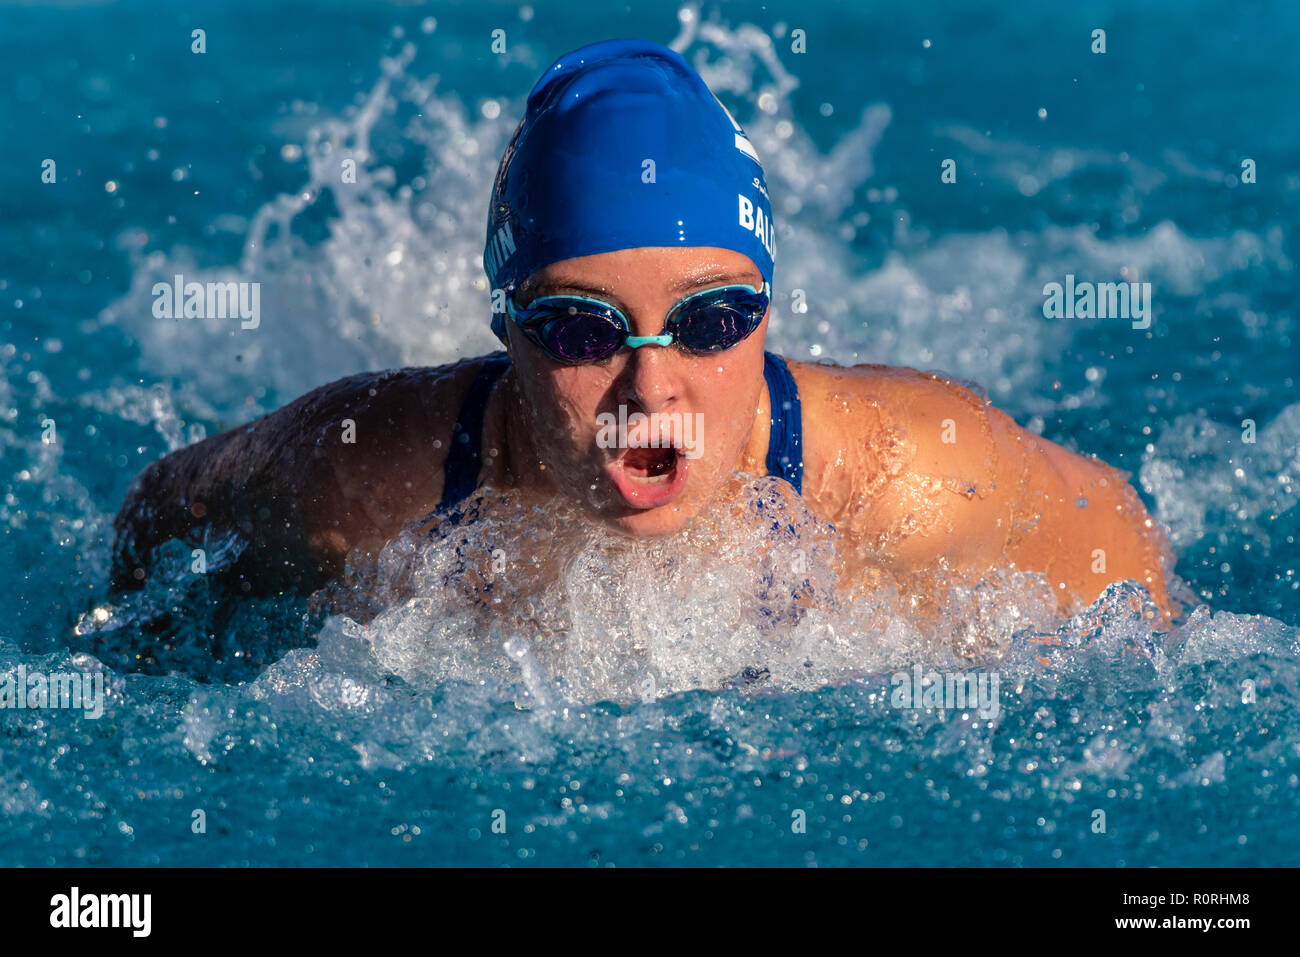 Femmina competitivo nuotatore arrivando fino a respirare durante la potente corsa farfalla durante la gara. Foto Stock